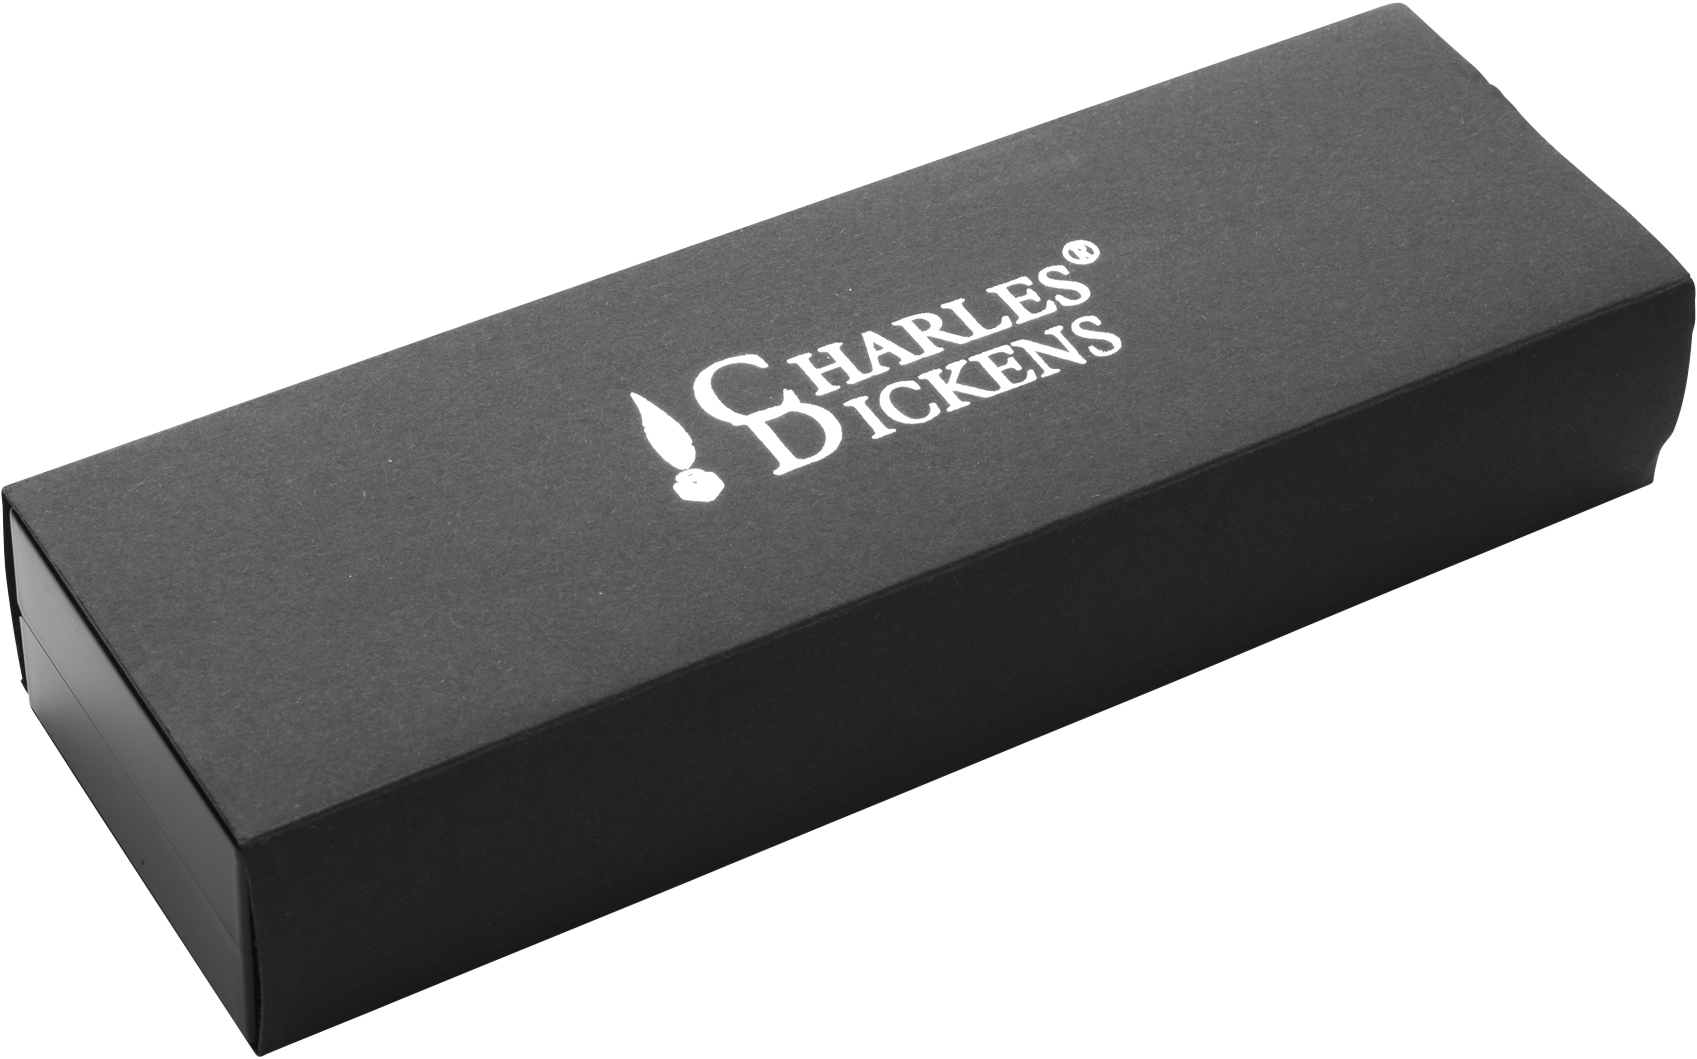 Branded Charles Dickens ballpen.